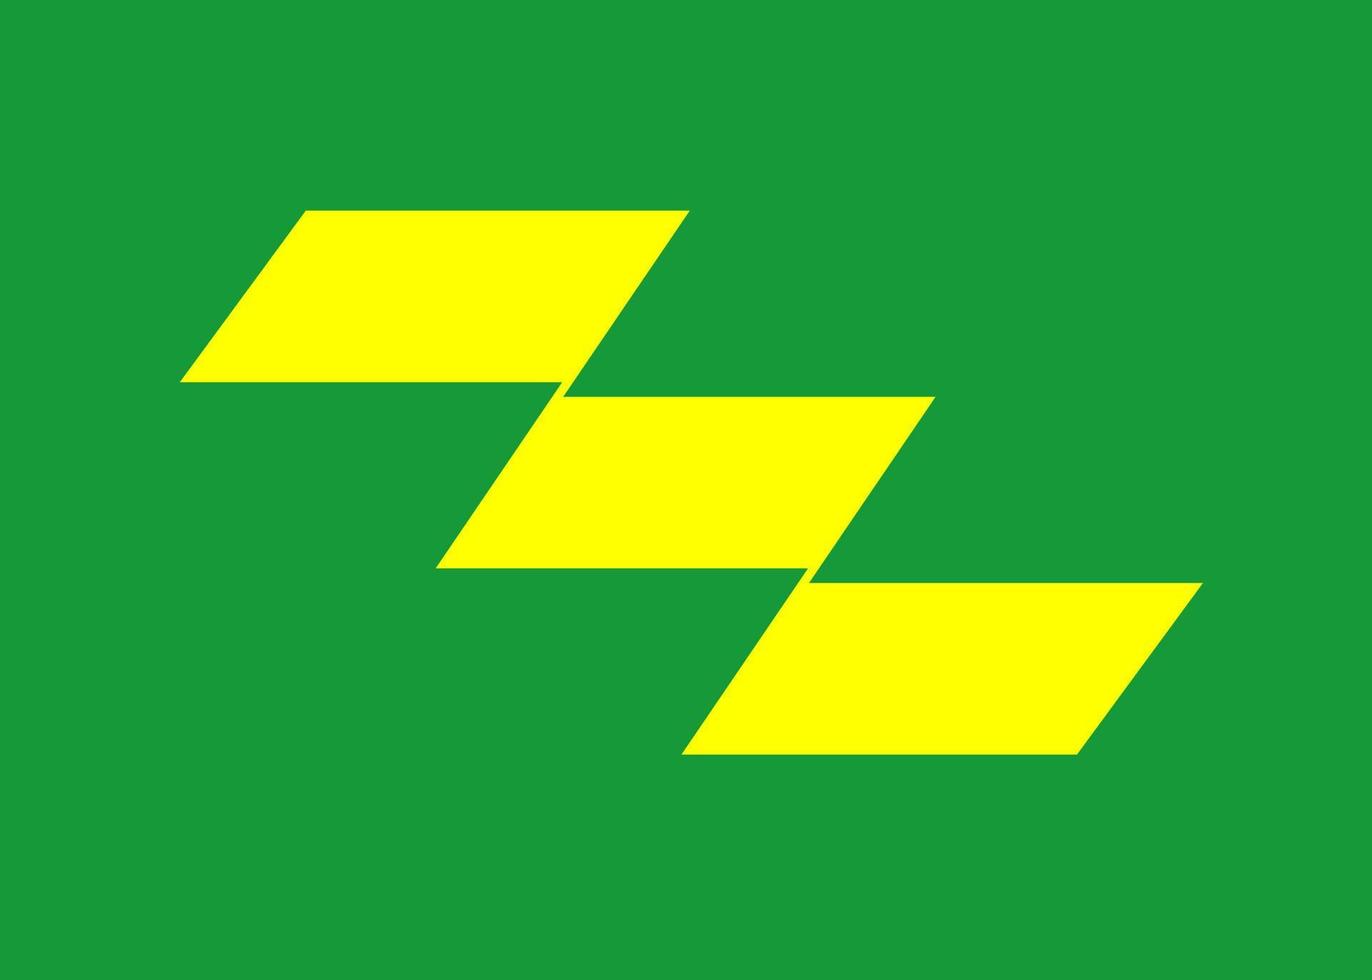 miyazaki bandiera, Giappone prefettura. vettore illustrazione